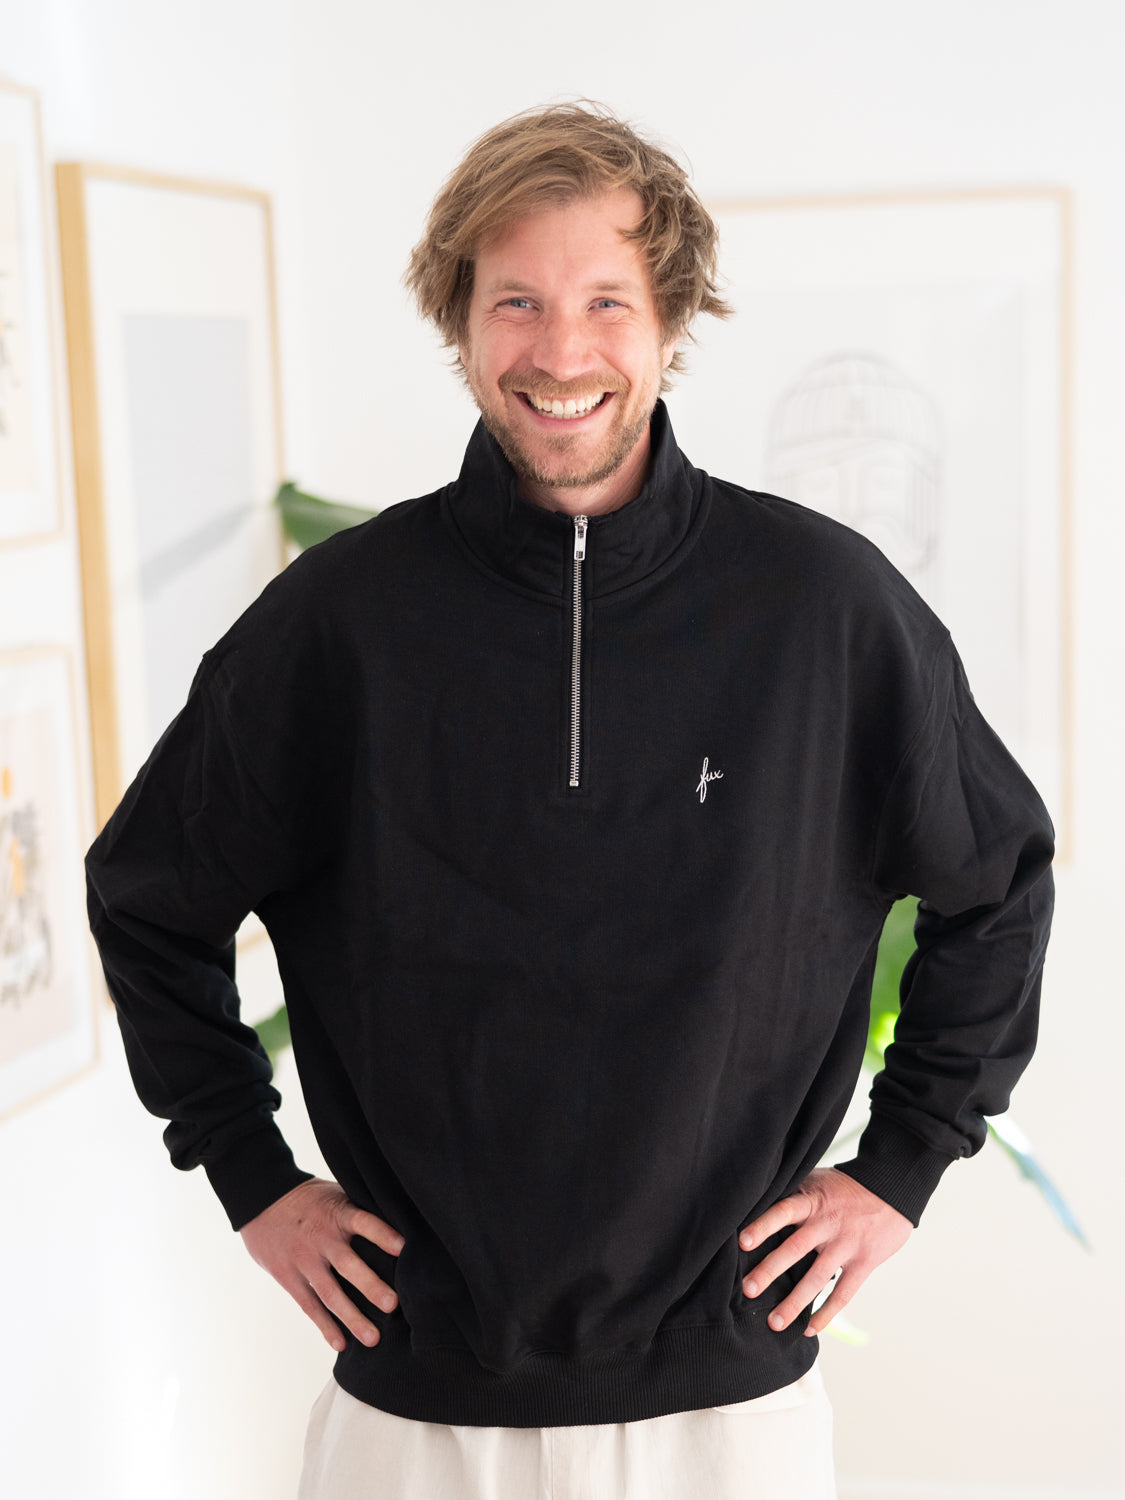 Kenny trägt unseren FUXBAU Fair Fashion Half Zip Sweater in schwarz aus Biobaumwolle